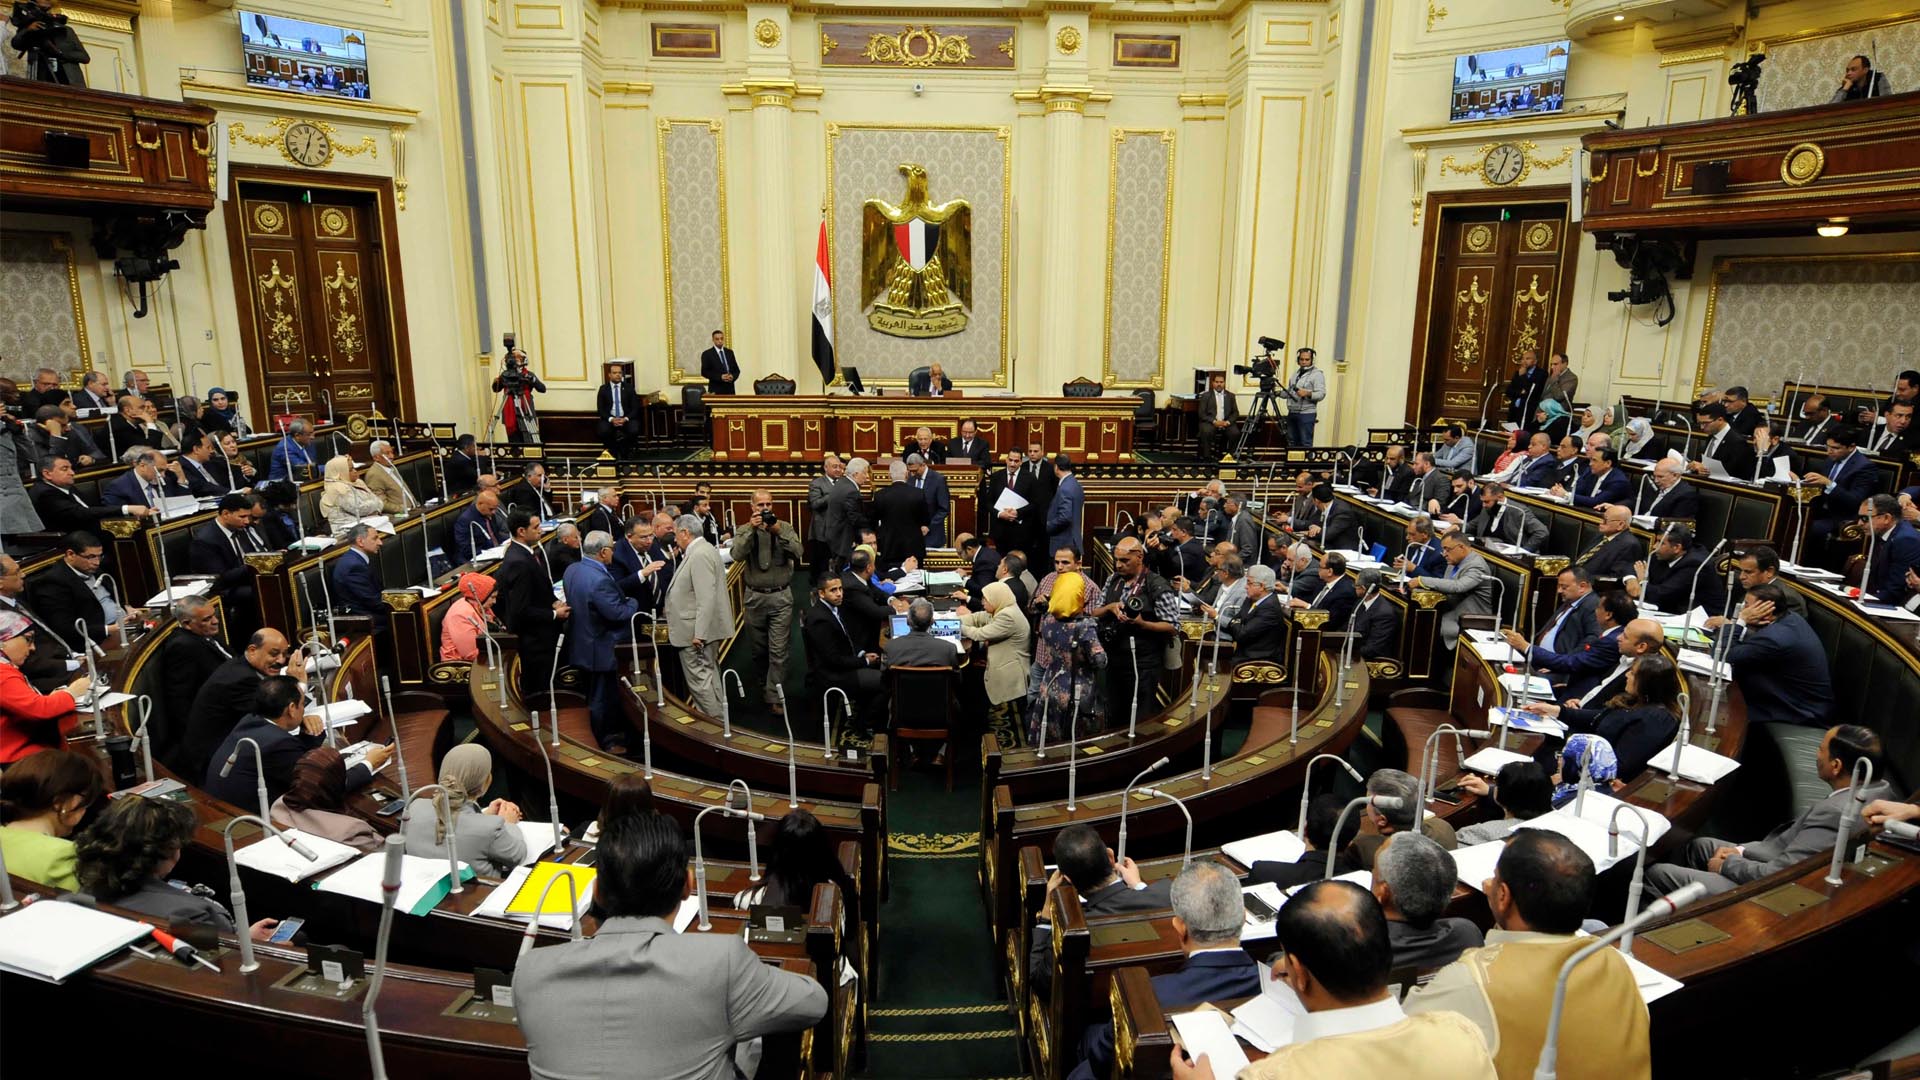 تفاصيل الإتفاق المصري الكندي بشأن الصحة الإنجابية وموقف البرلمان المصري